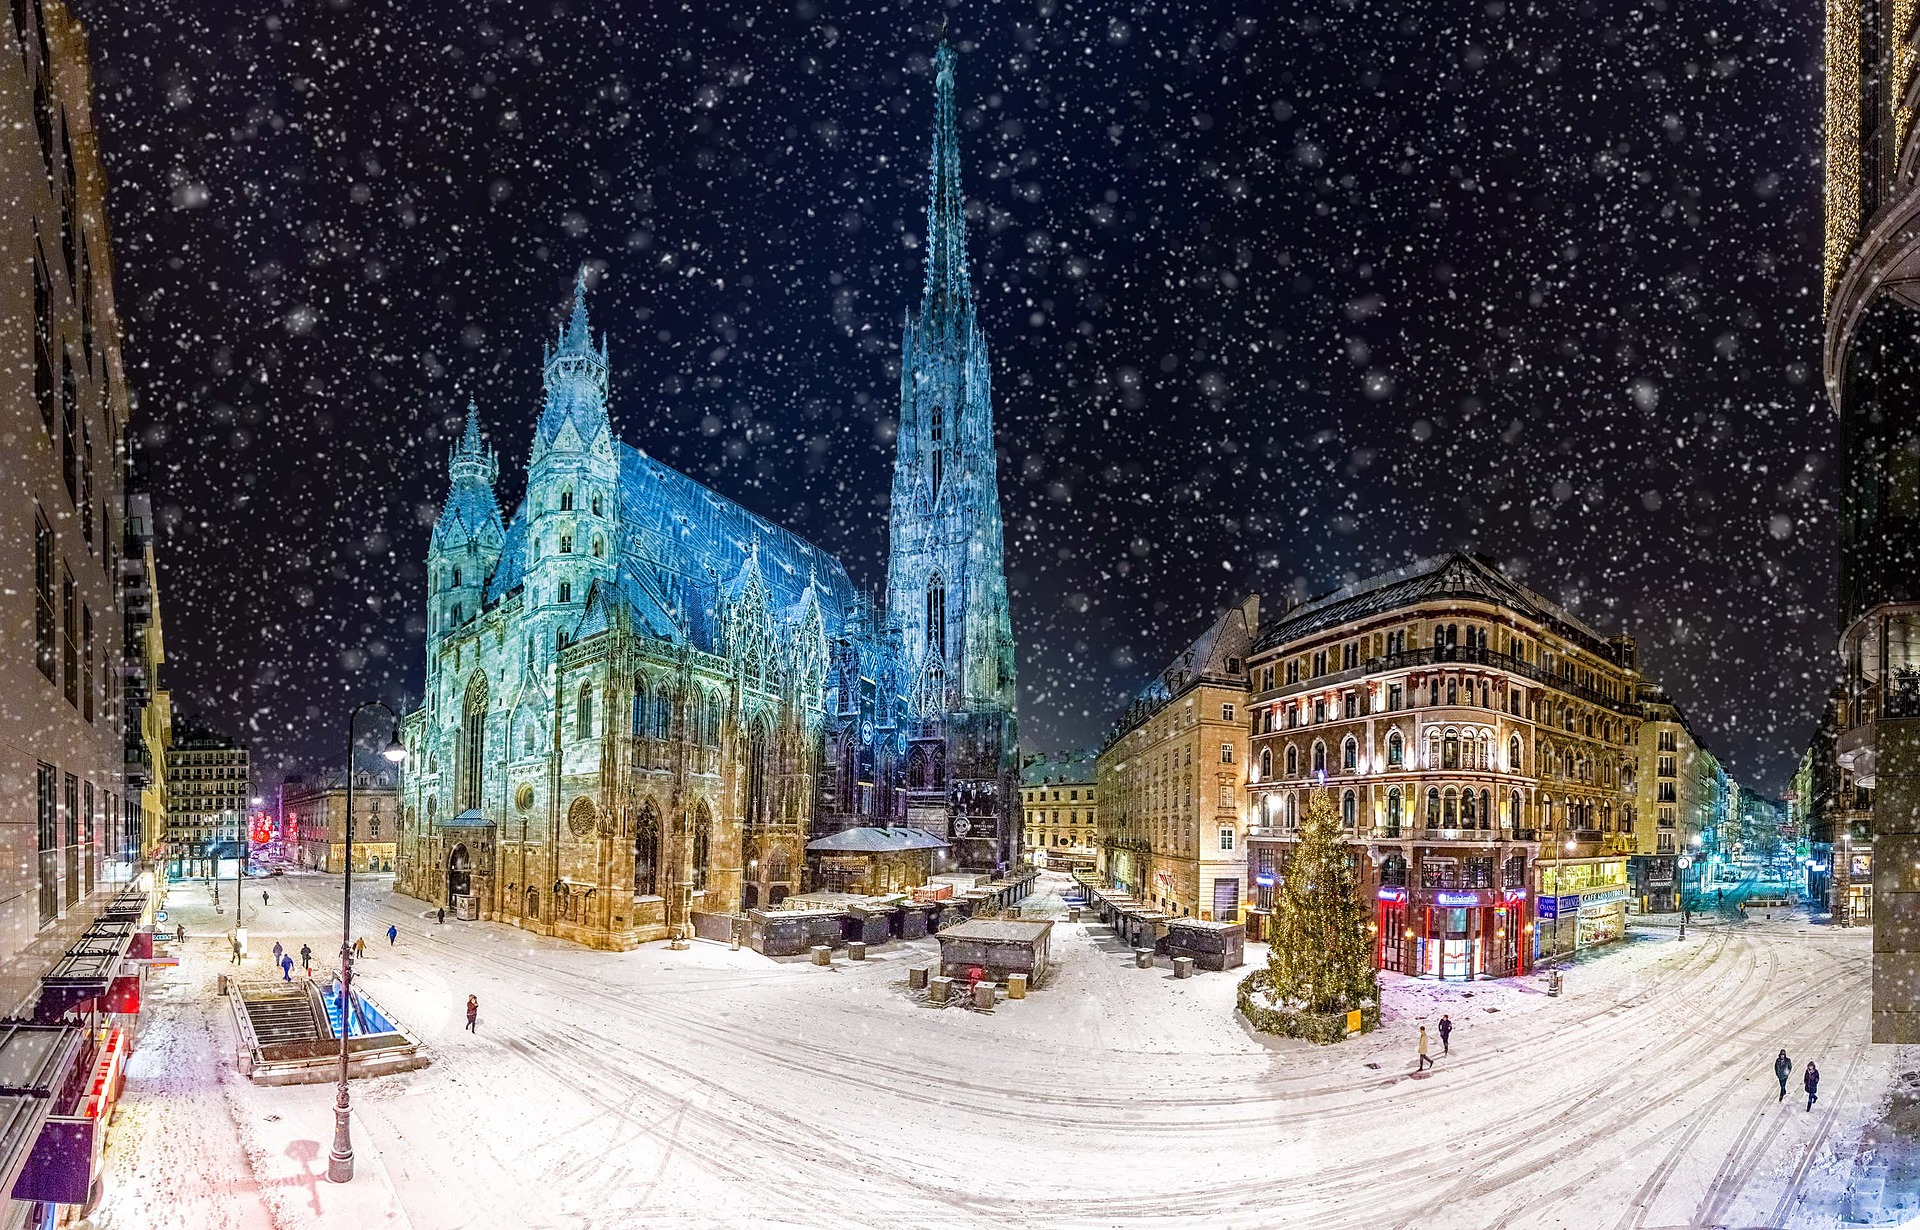 O que fazer em Viena - confira os eventos durante o ano - O Mundo Me Chama  — roteiros e dicas de viagem!